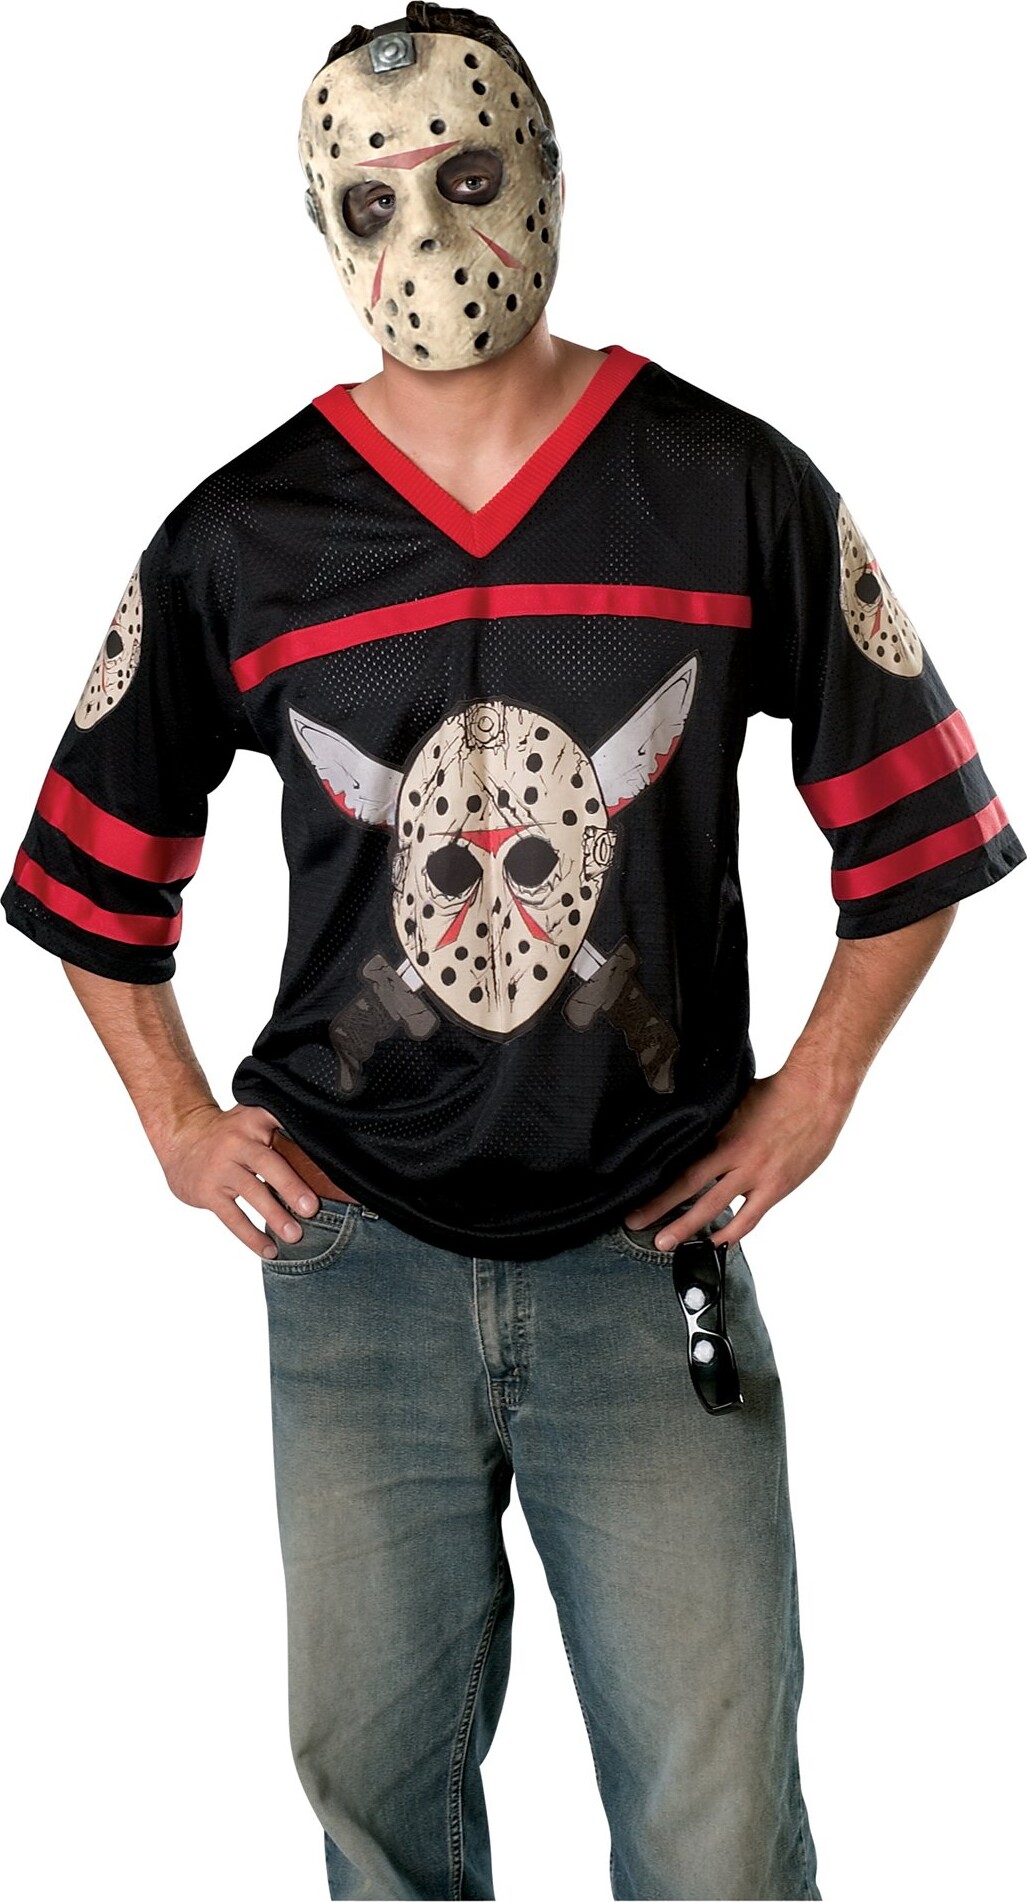 Jason Voorhees Kostume - Hockey Trøje Og Maske - Rubies